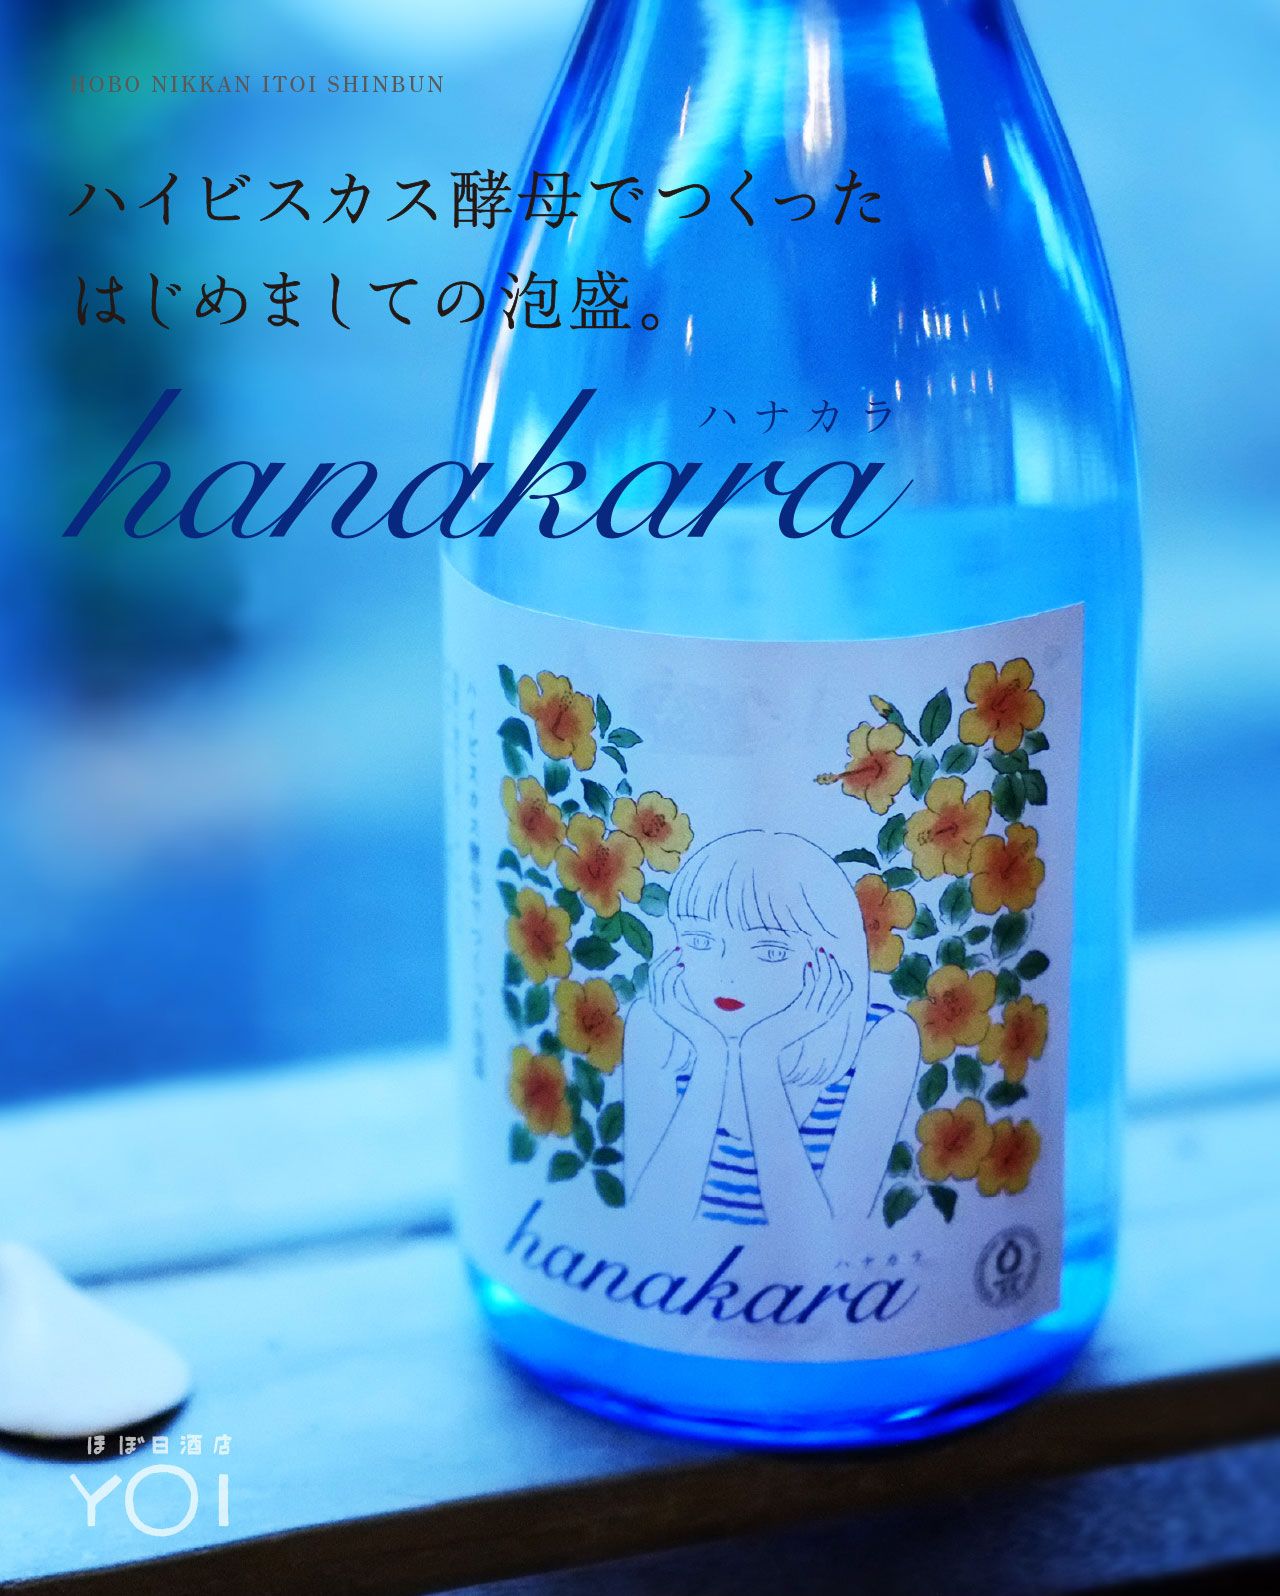 [ほぼ日酒店 YOI] ハイビスカス酵母でつくった、はじめましての泡盛「hanakara」